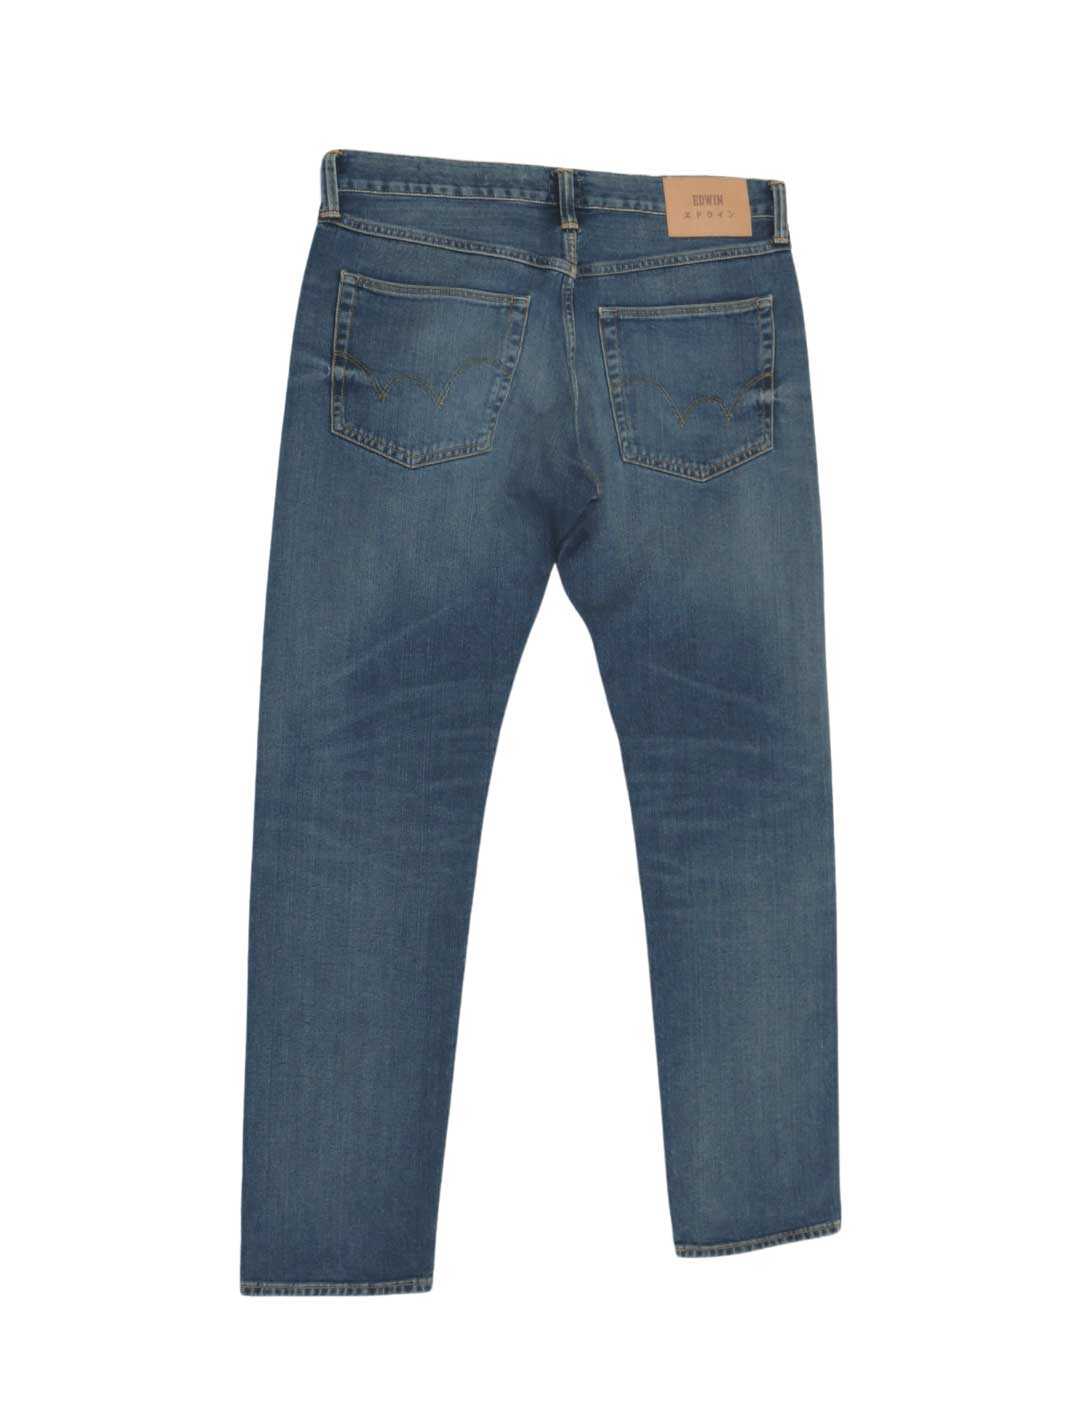 Herren upcycling Jeans Größe 34/32 mittelblaue Waschung regular straight fit 100% Baumwolle Japanese Denim